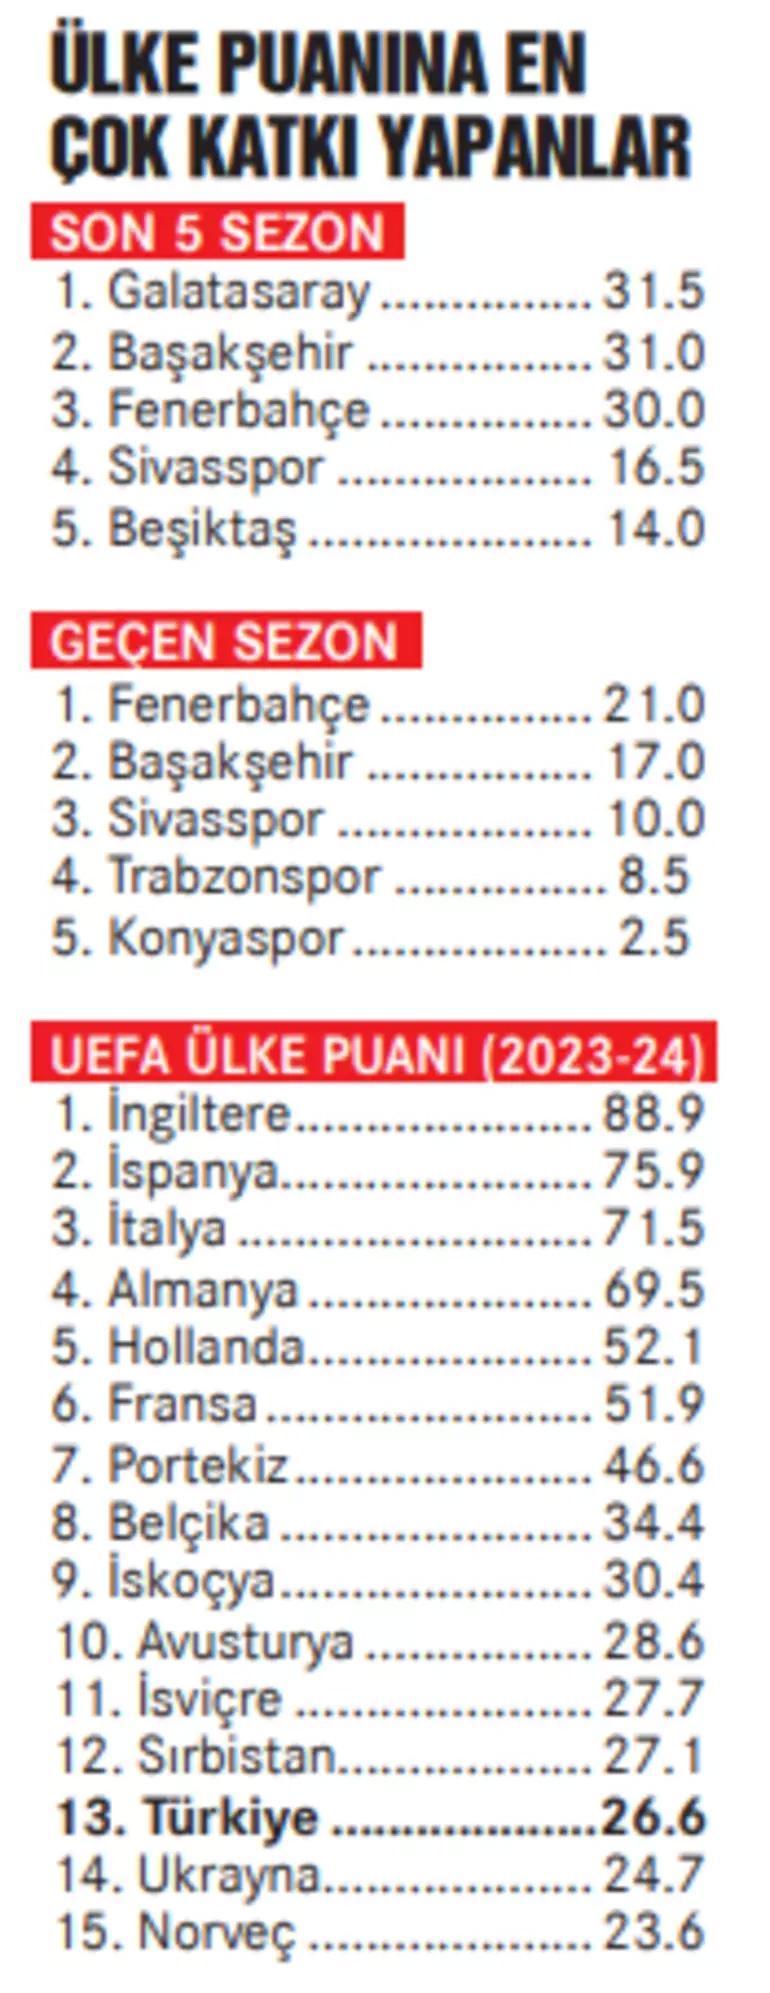 UEFA Ülke Puanı için kritik sezon Temsilcilerimize büyük iş düşüyor